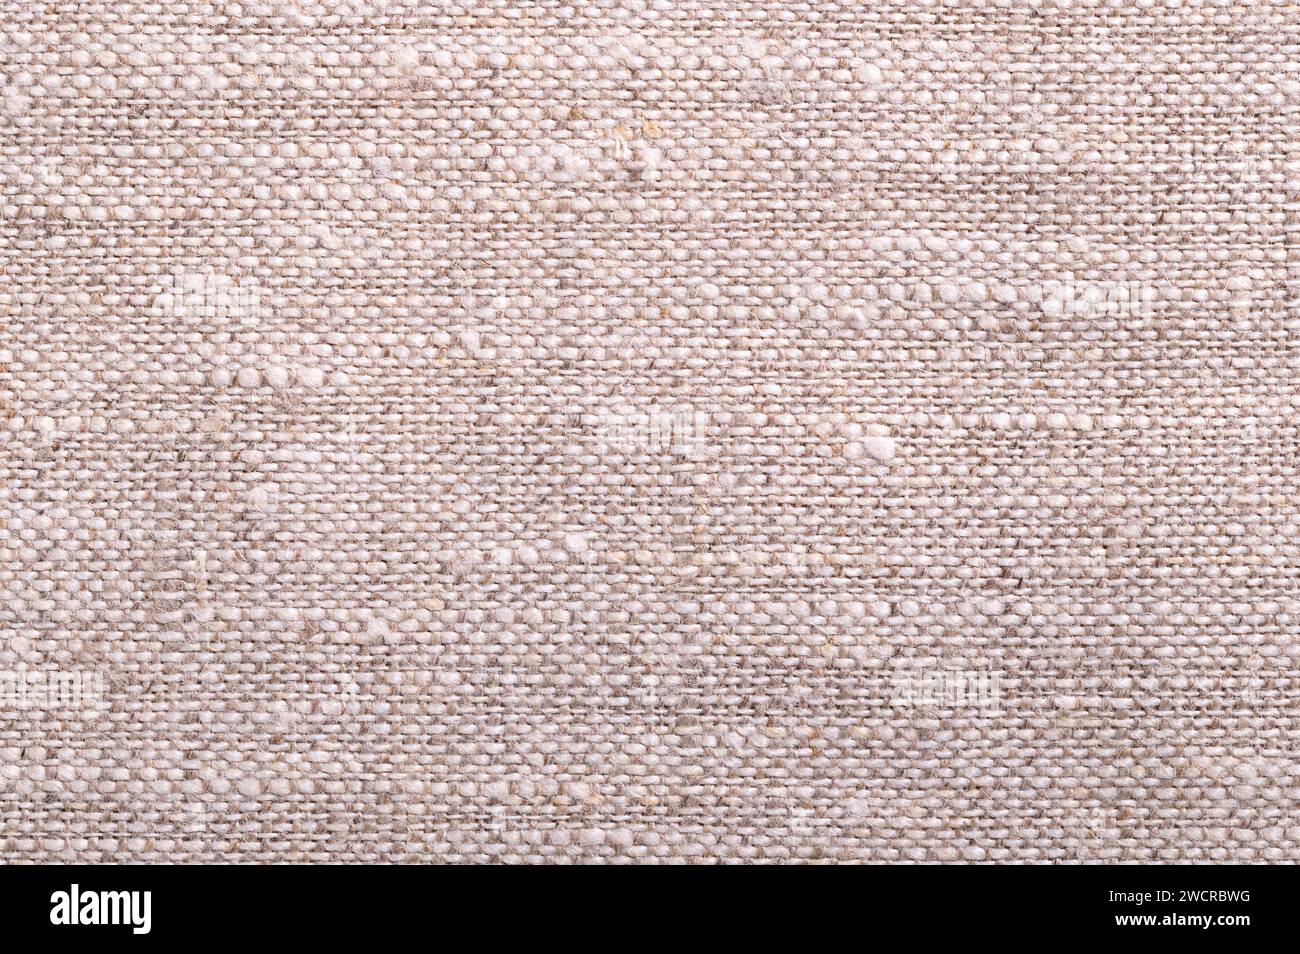 Tissu en lin, surface, par le haut. Textile fabriqué à partir des fibres de la plante de lin. Le lin est très résistant et absorbant et sèche plus vite que le coton. Banque D'Images